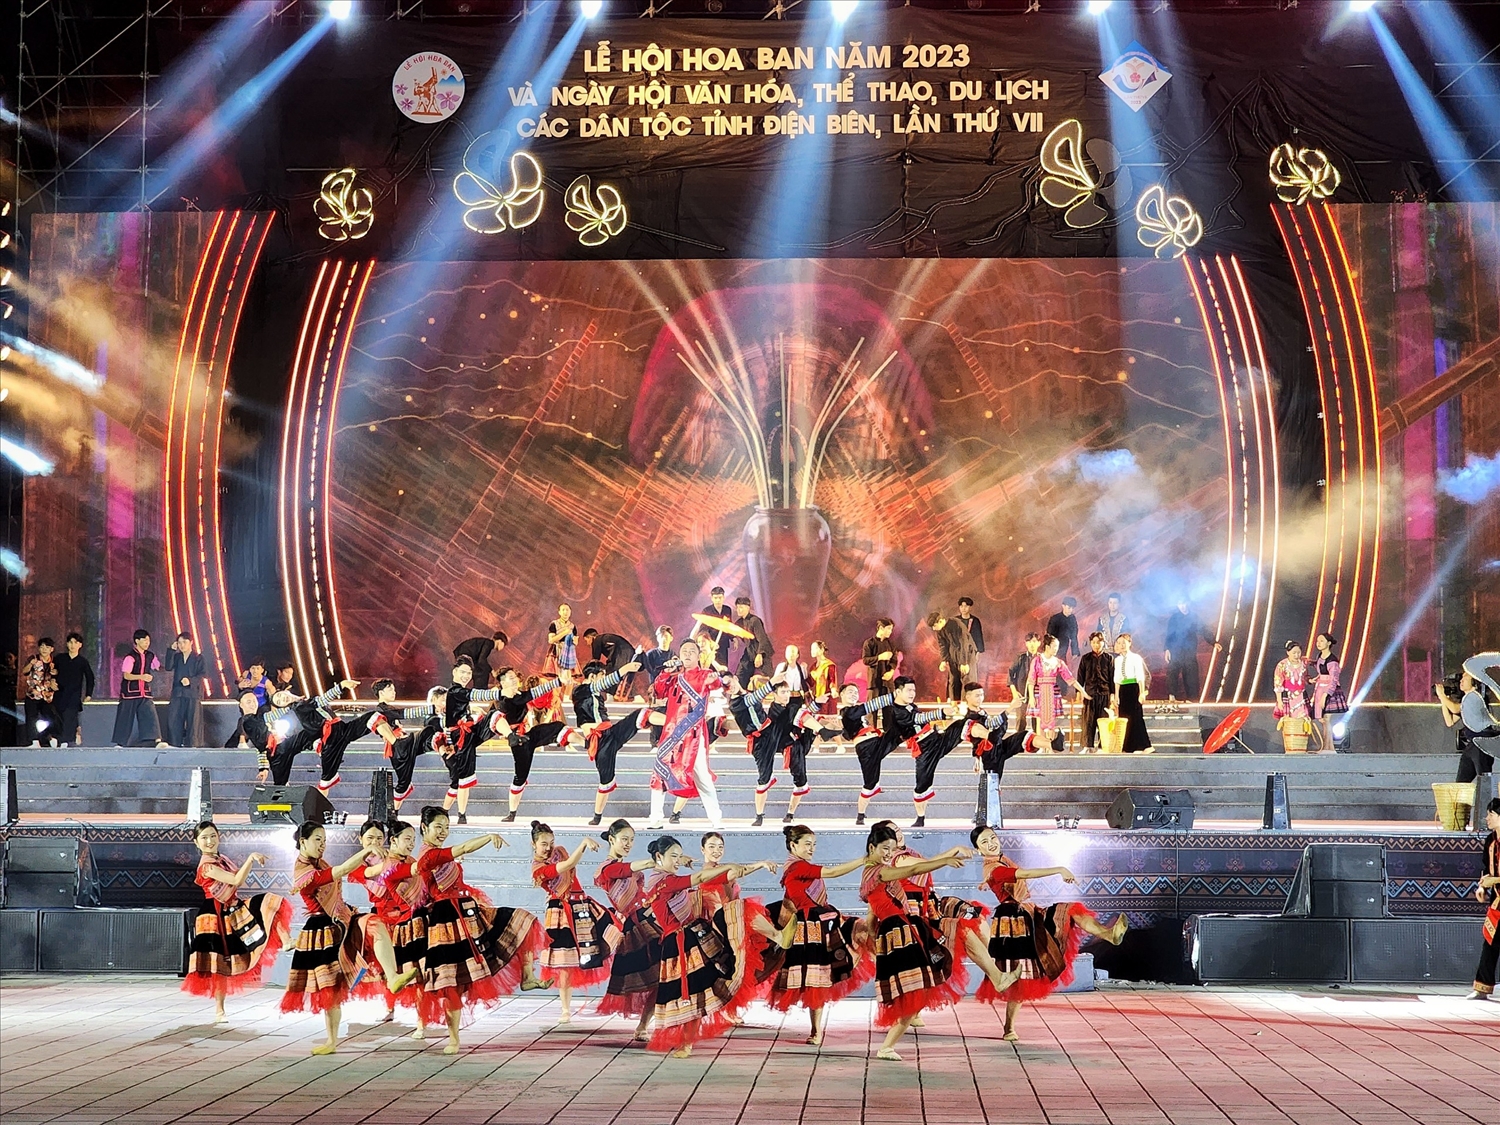 Lễ hội Hoa Ban đã trở thành một thương hiệu du lịch đặc sắc riêng có của tỉnh Điện Biên